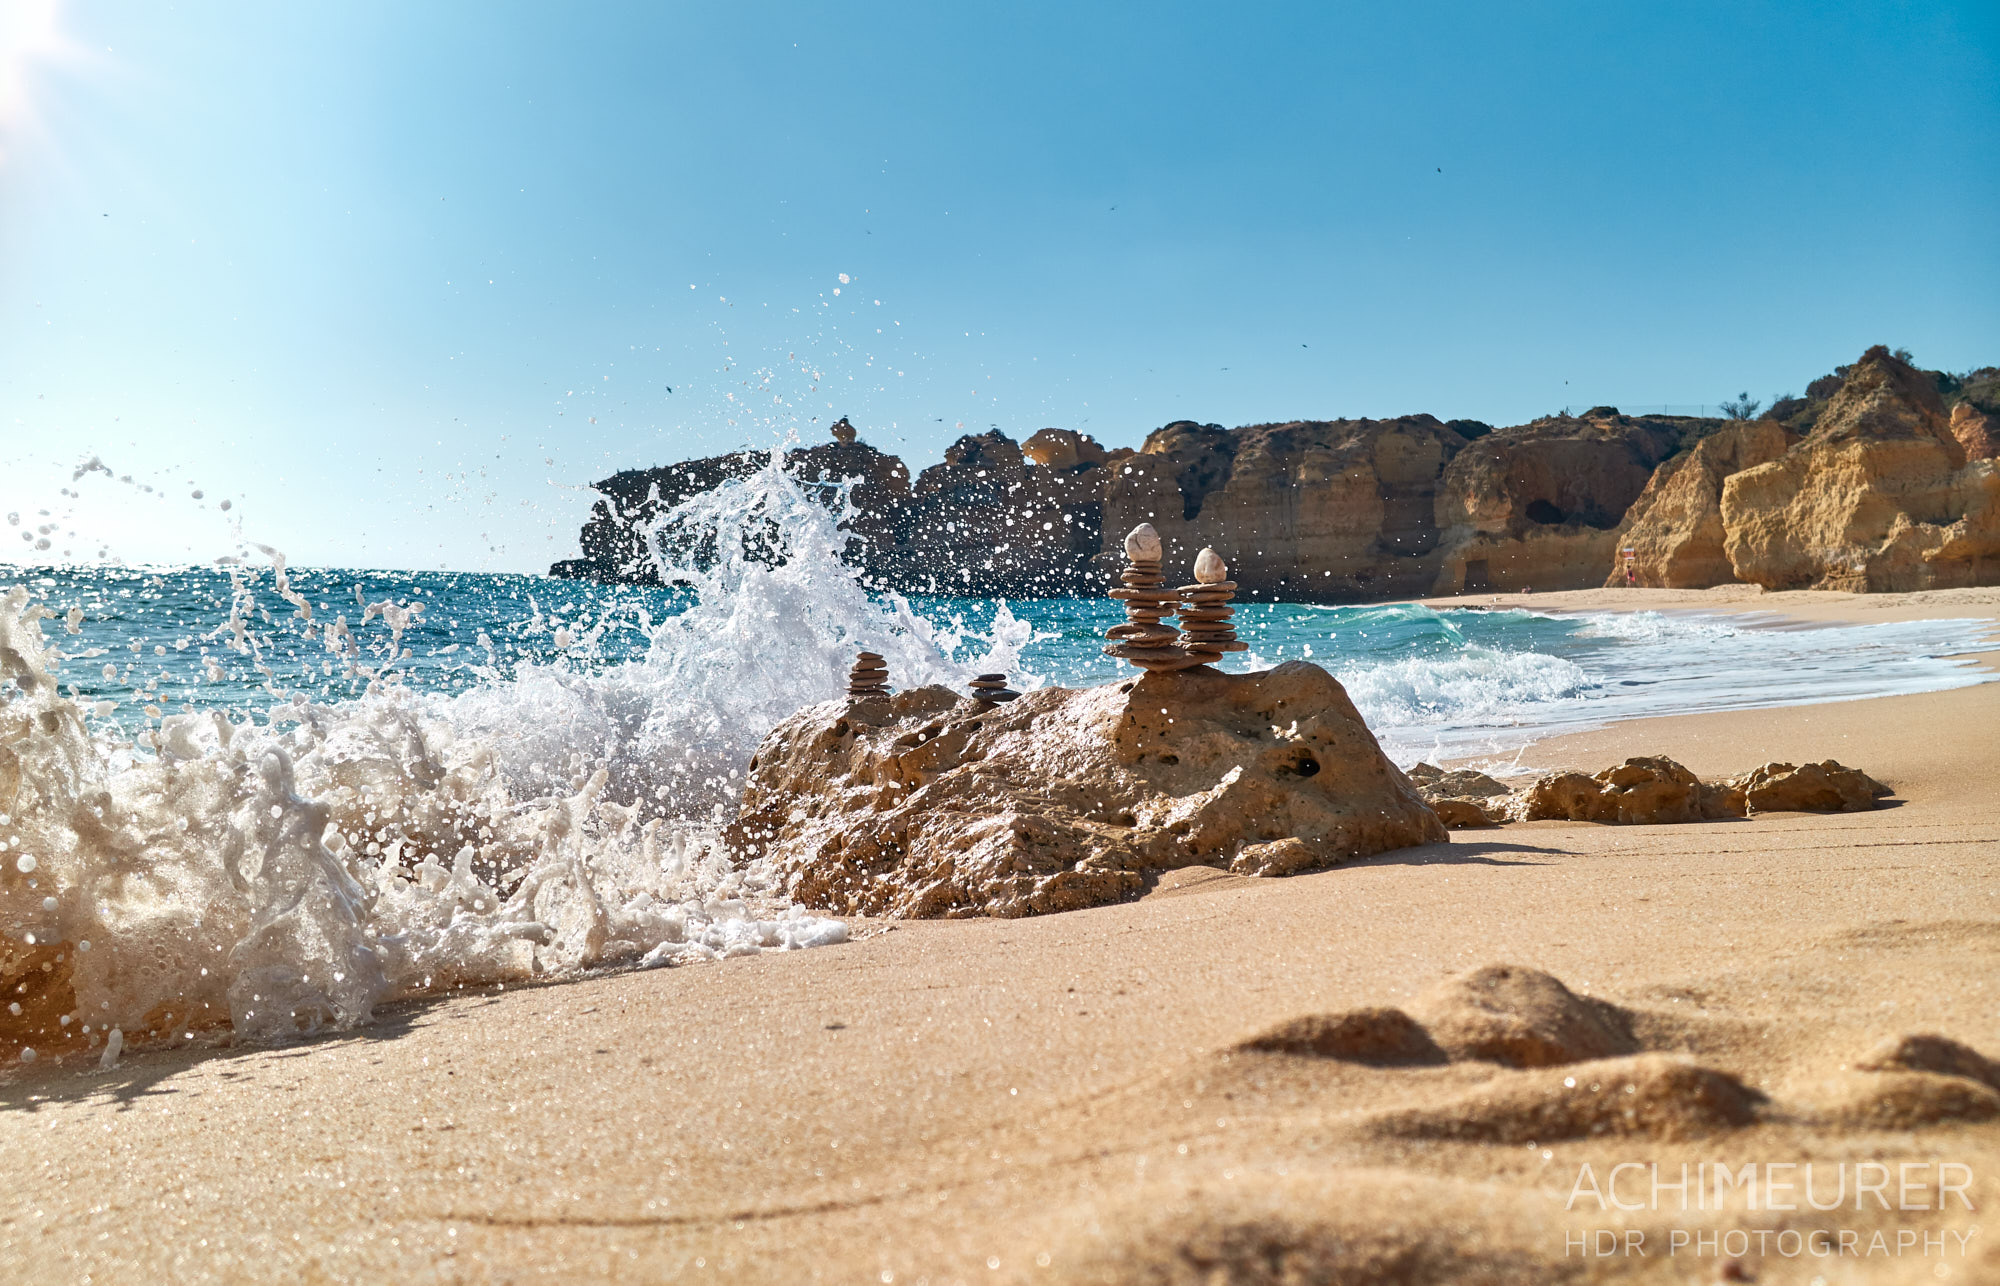 Splash - am Strand in der Nähe von Albufeira, Algarve, Portugal by Achim Meurer.